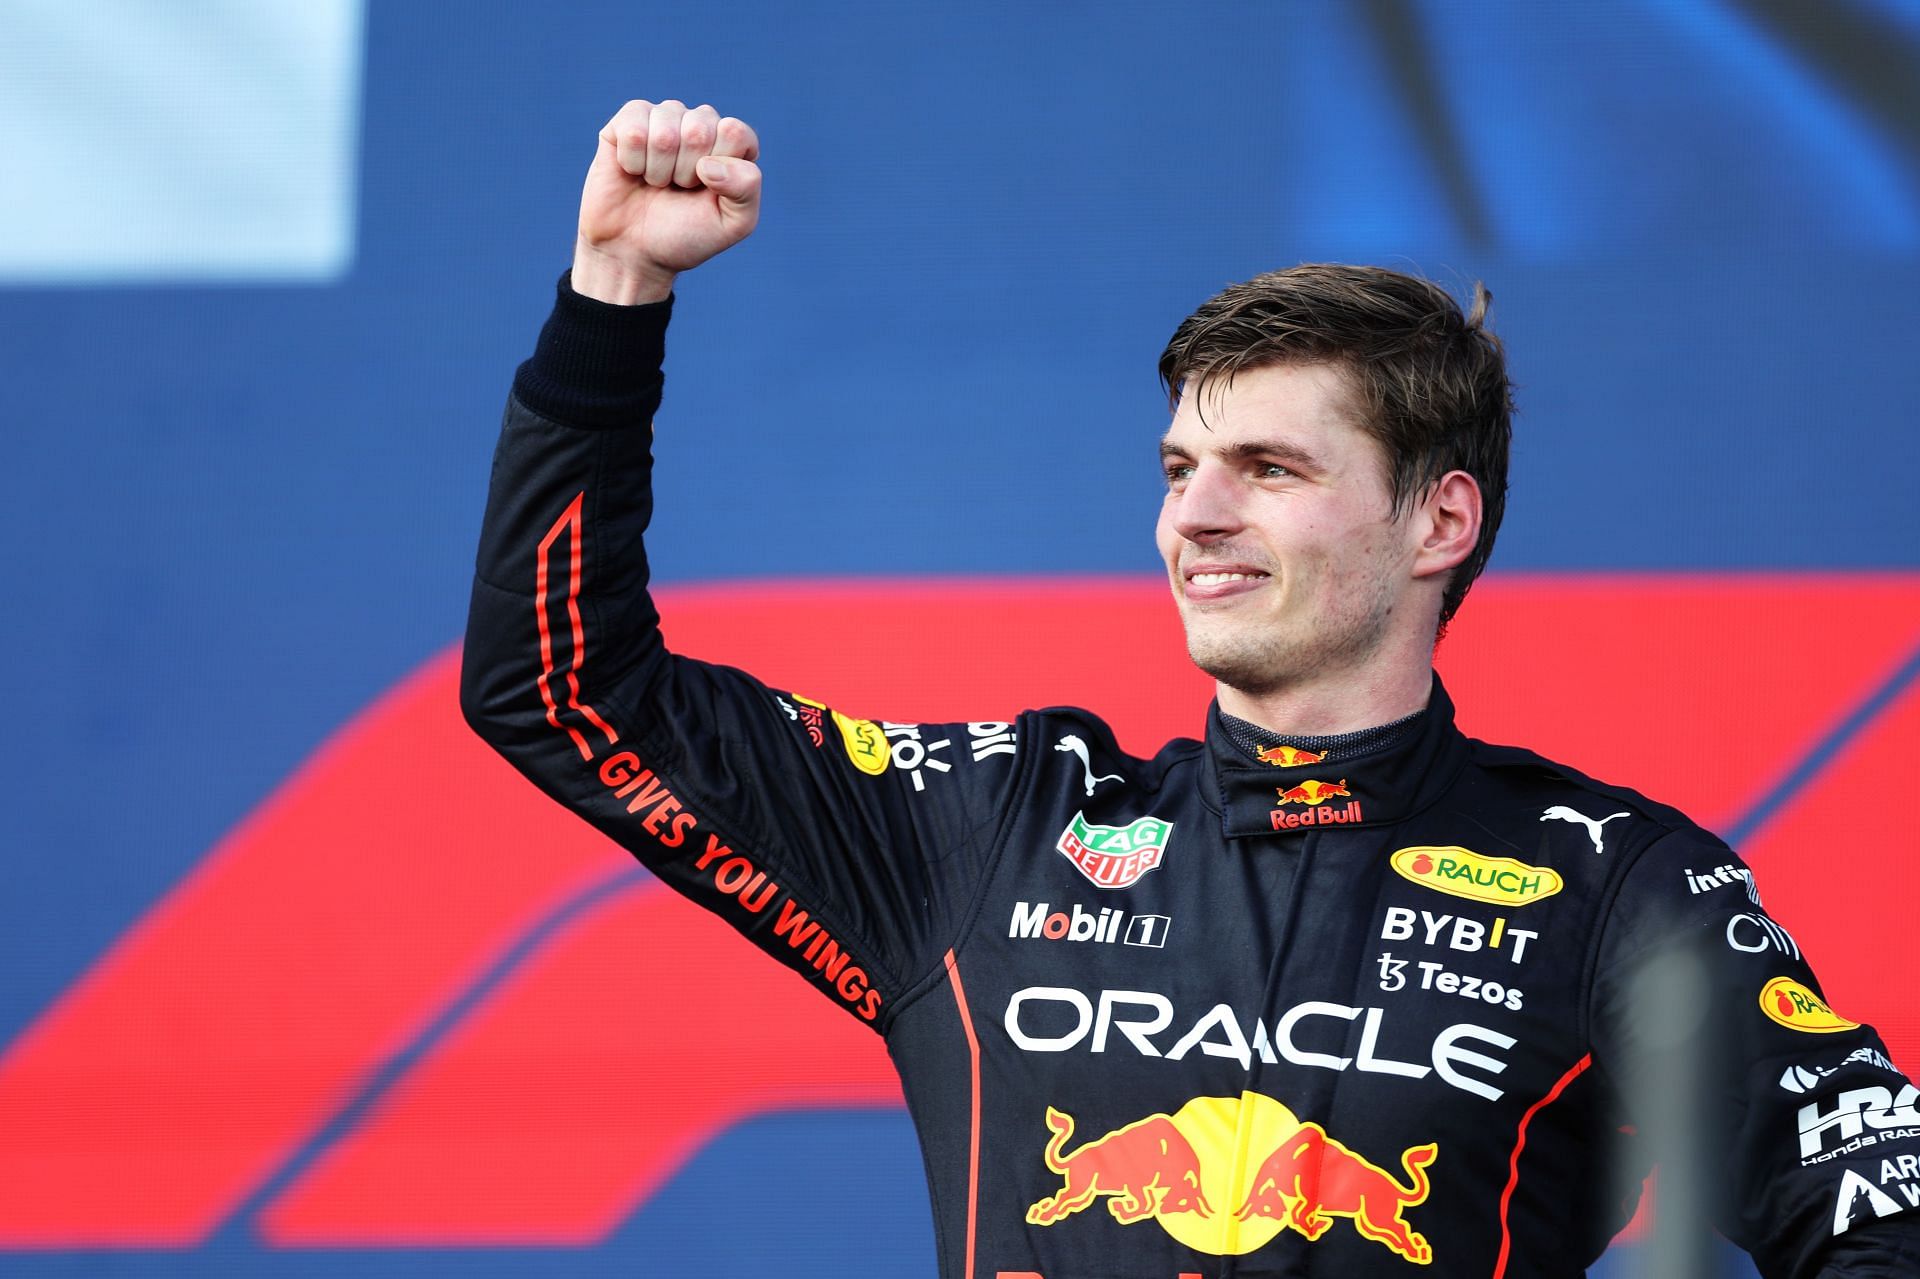 F1 Grand Prix of Miami - Max Verstappen wins in Miami